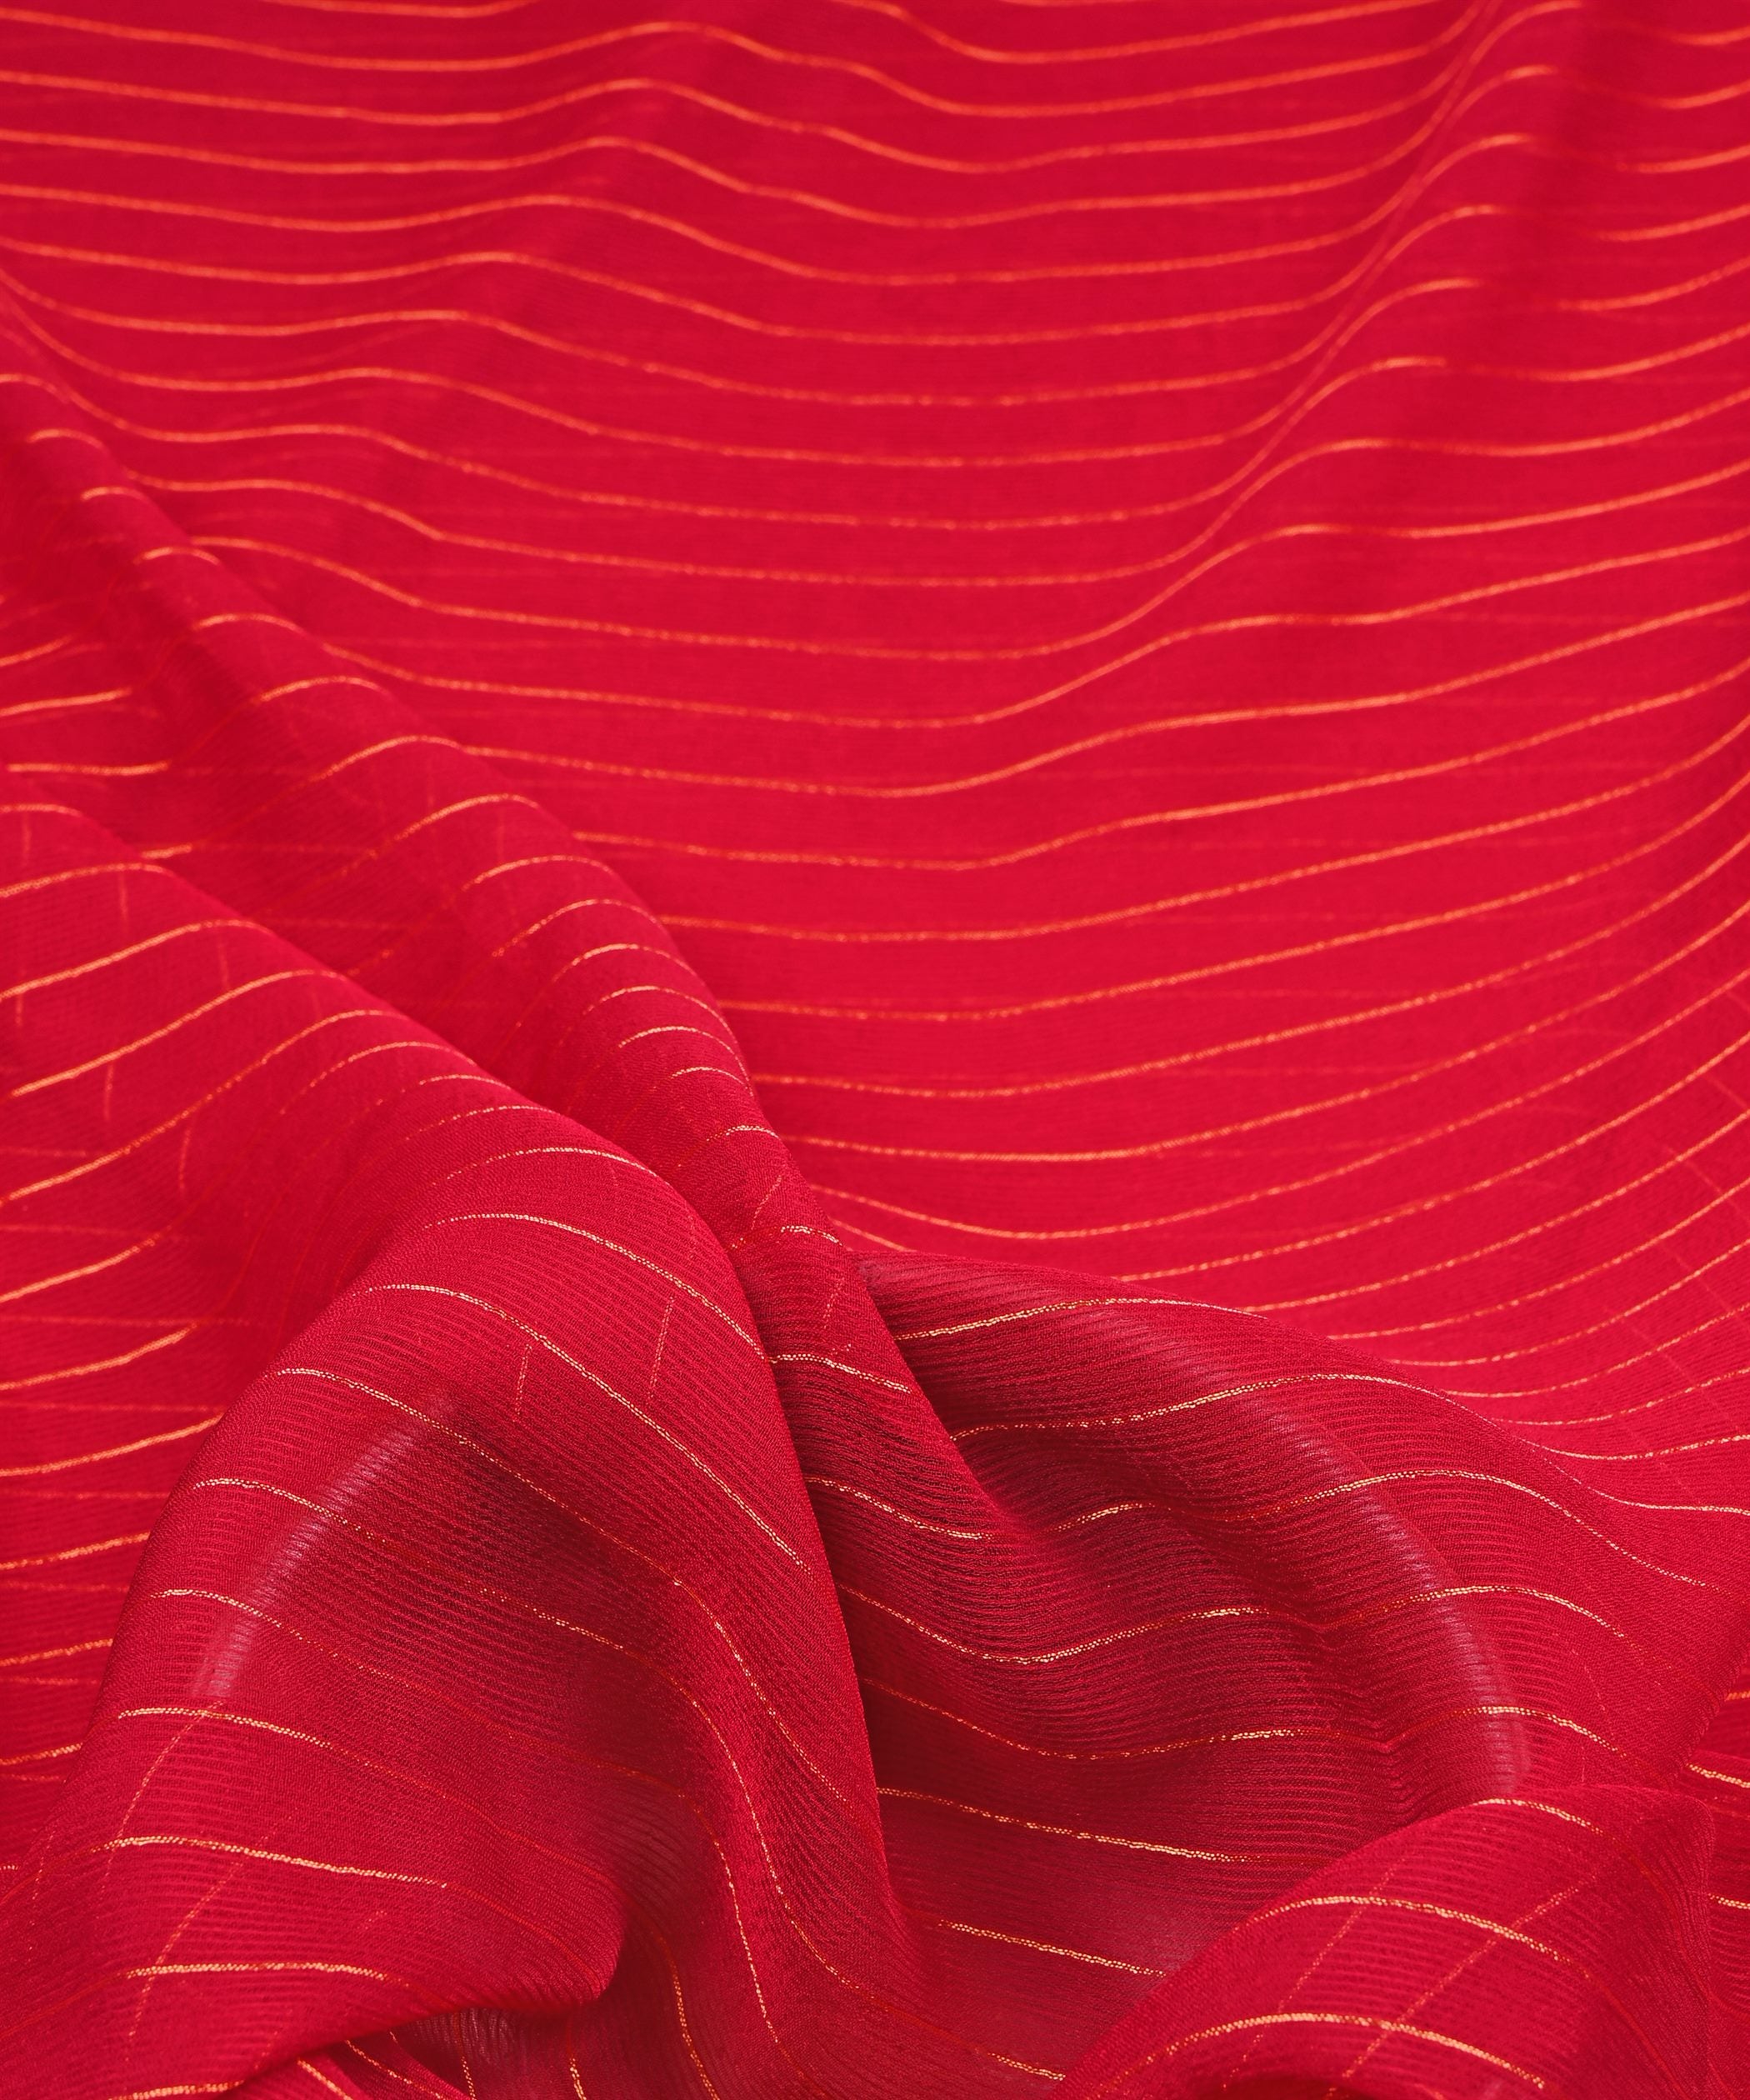 Hot Pink Chiffon Fabric with Zari Lining